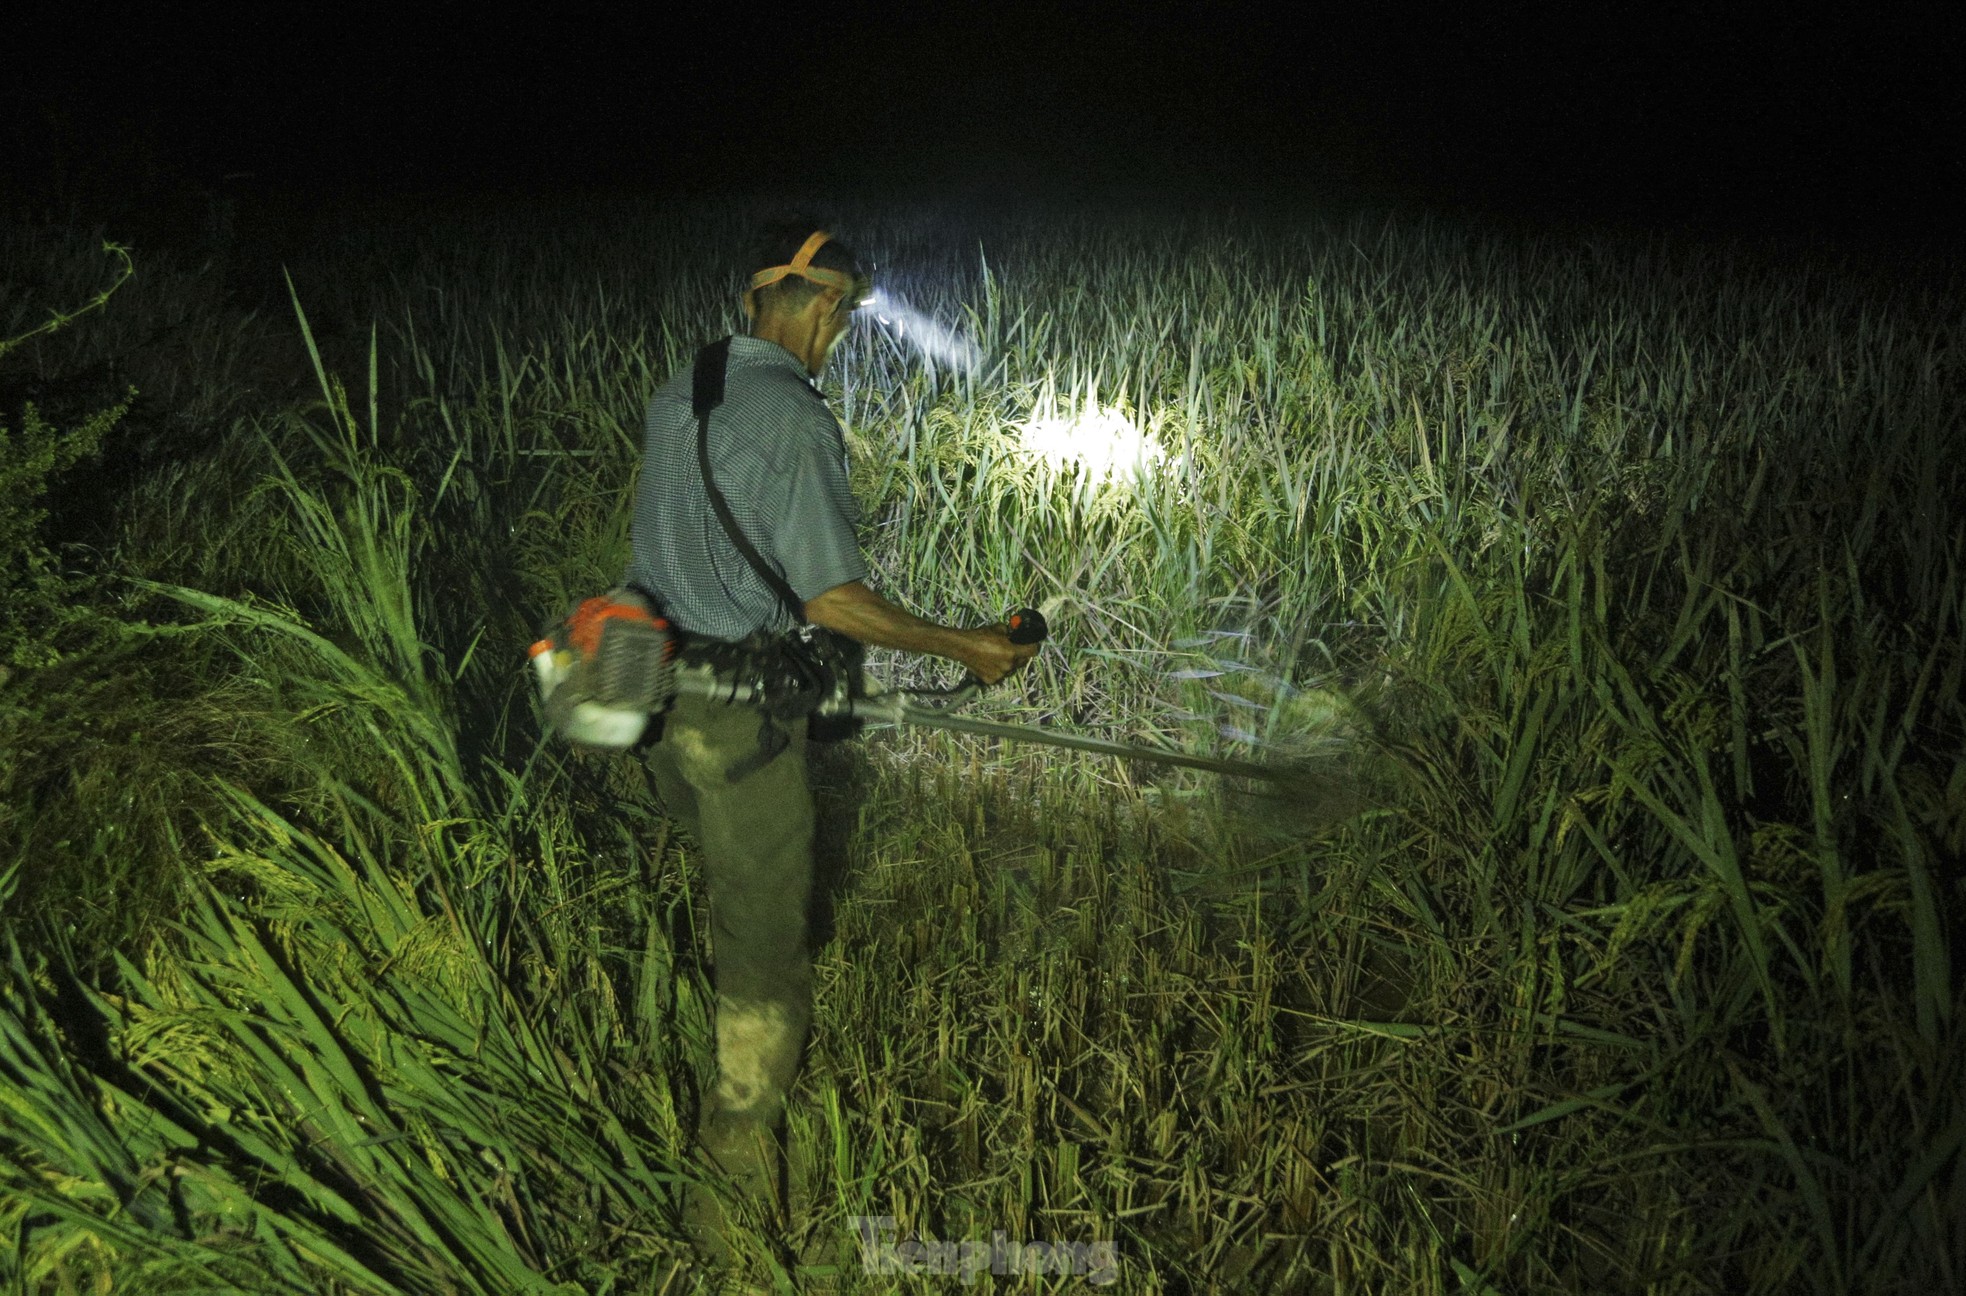 Nông dân Hà Tĩnh đội đèn gặt lúa trong đêm để tránh nắng ảnh 11